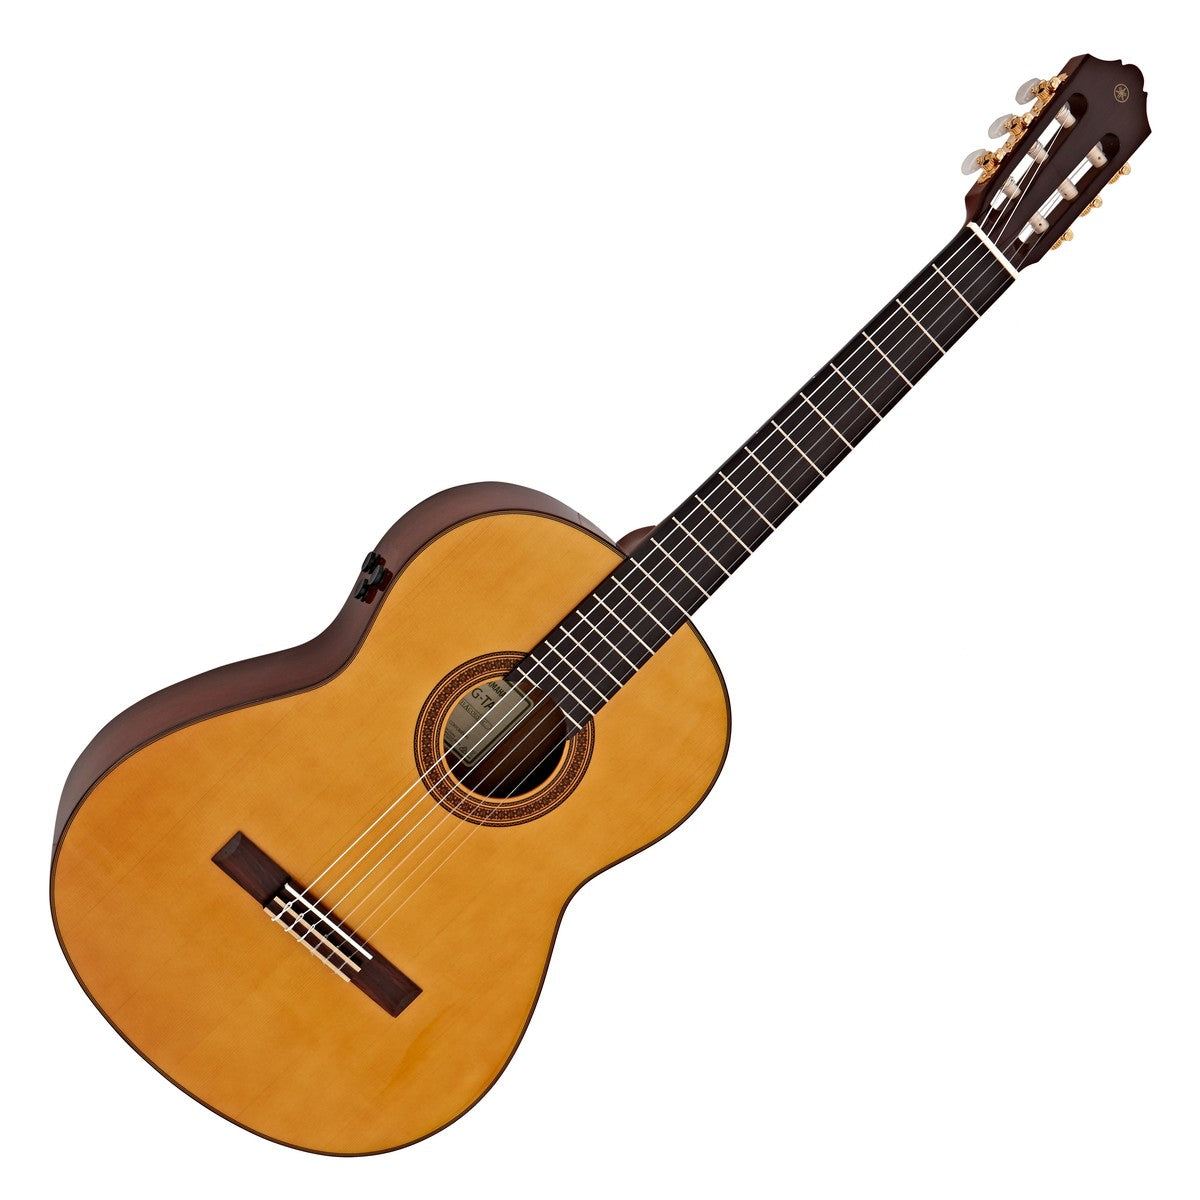 Đàn Guitar Yamaha FG-TA là cây đàn dây nylon sử dụng công nghệ TransAcoustic cho ra hiệu ứng âm thanh reverb và chorus mà không cần amplifier